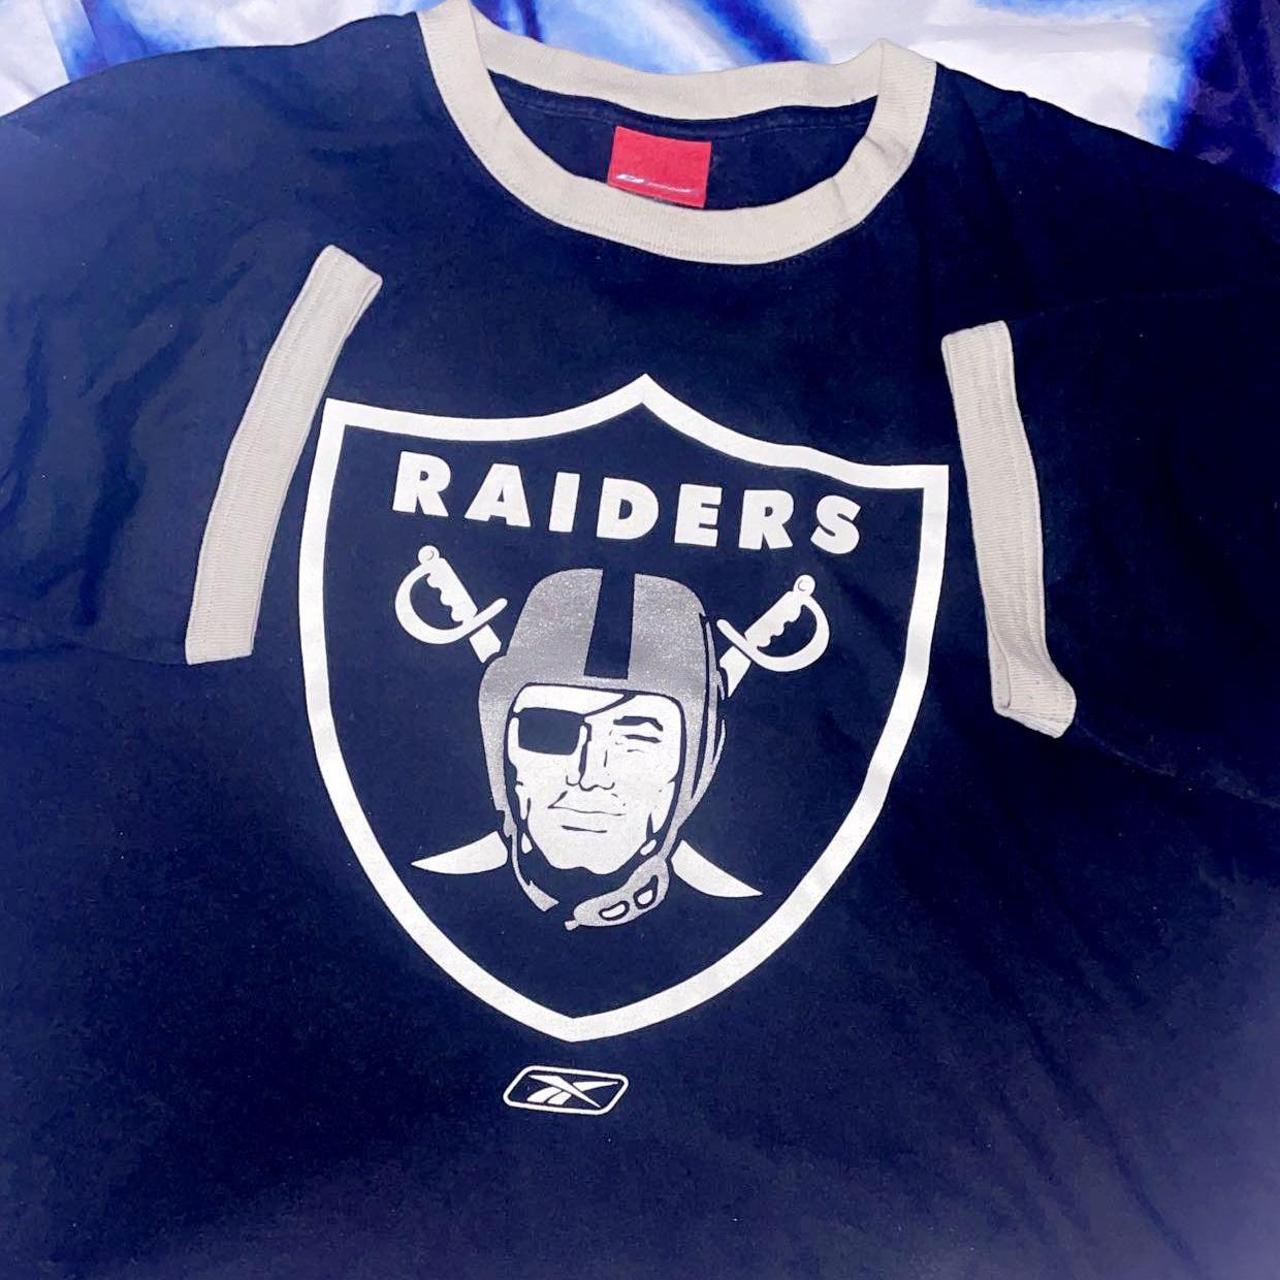 Vintage Raiders jersey Reebok jersey size xl +2 - Depop